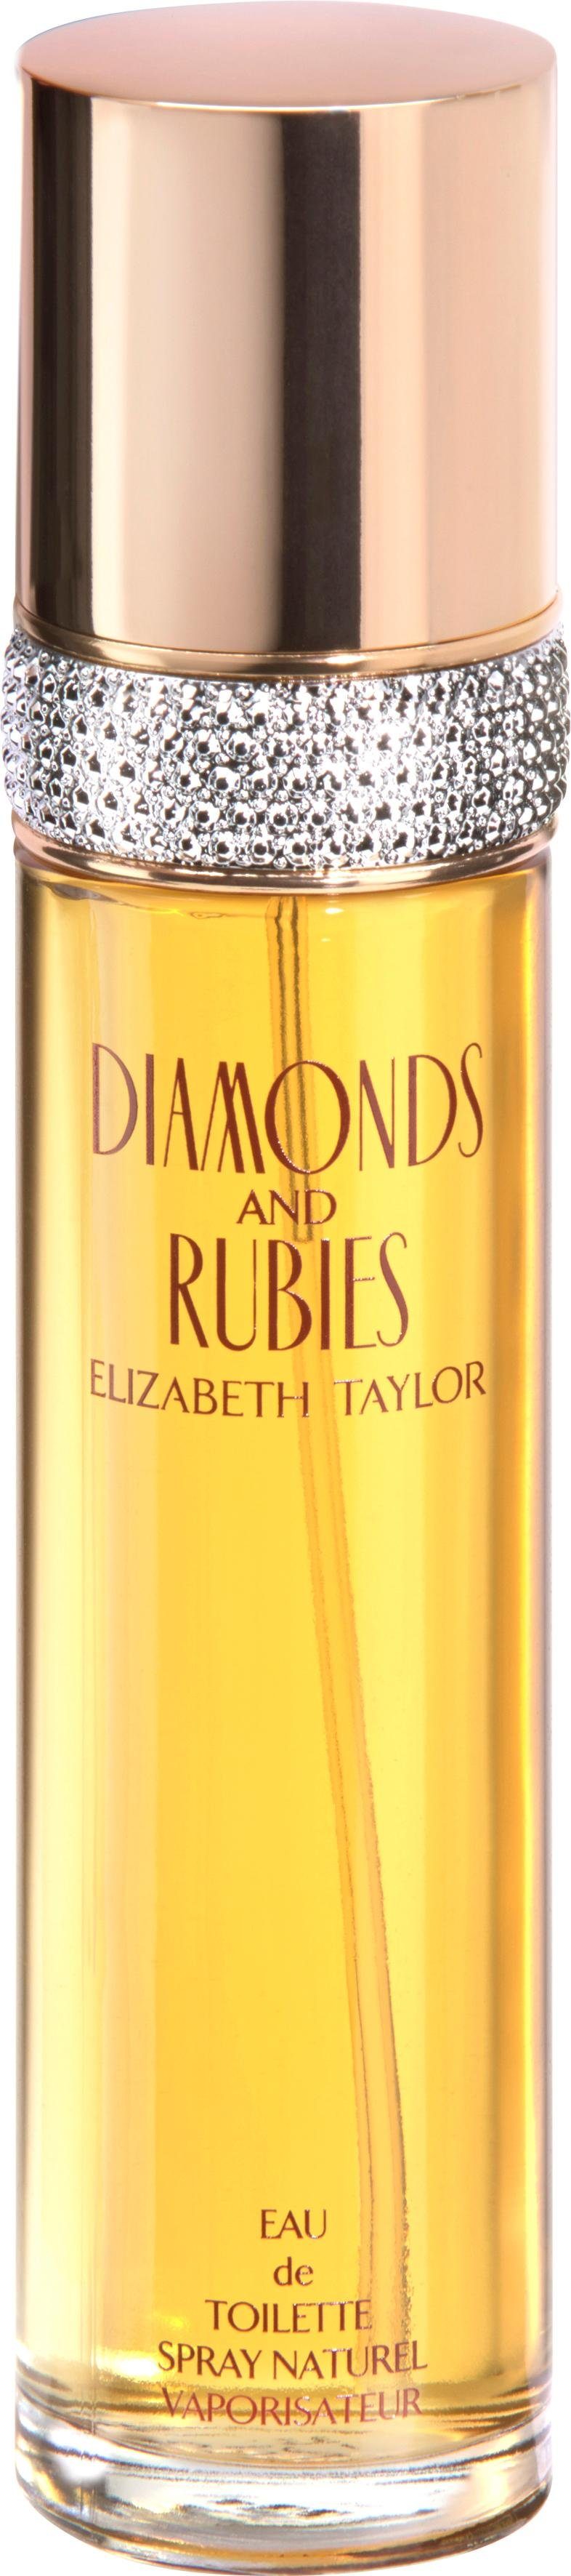 Elizabeth Taylor Eau de Toilette Diamonds & Rubies | Eau de Toilette